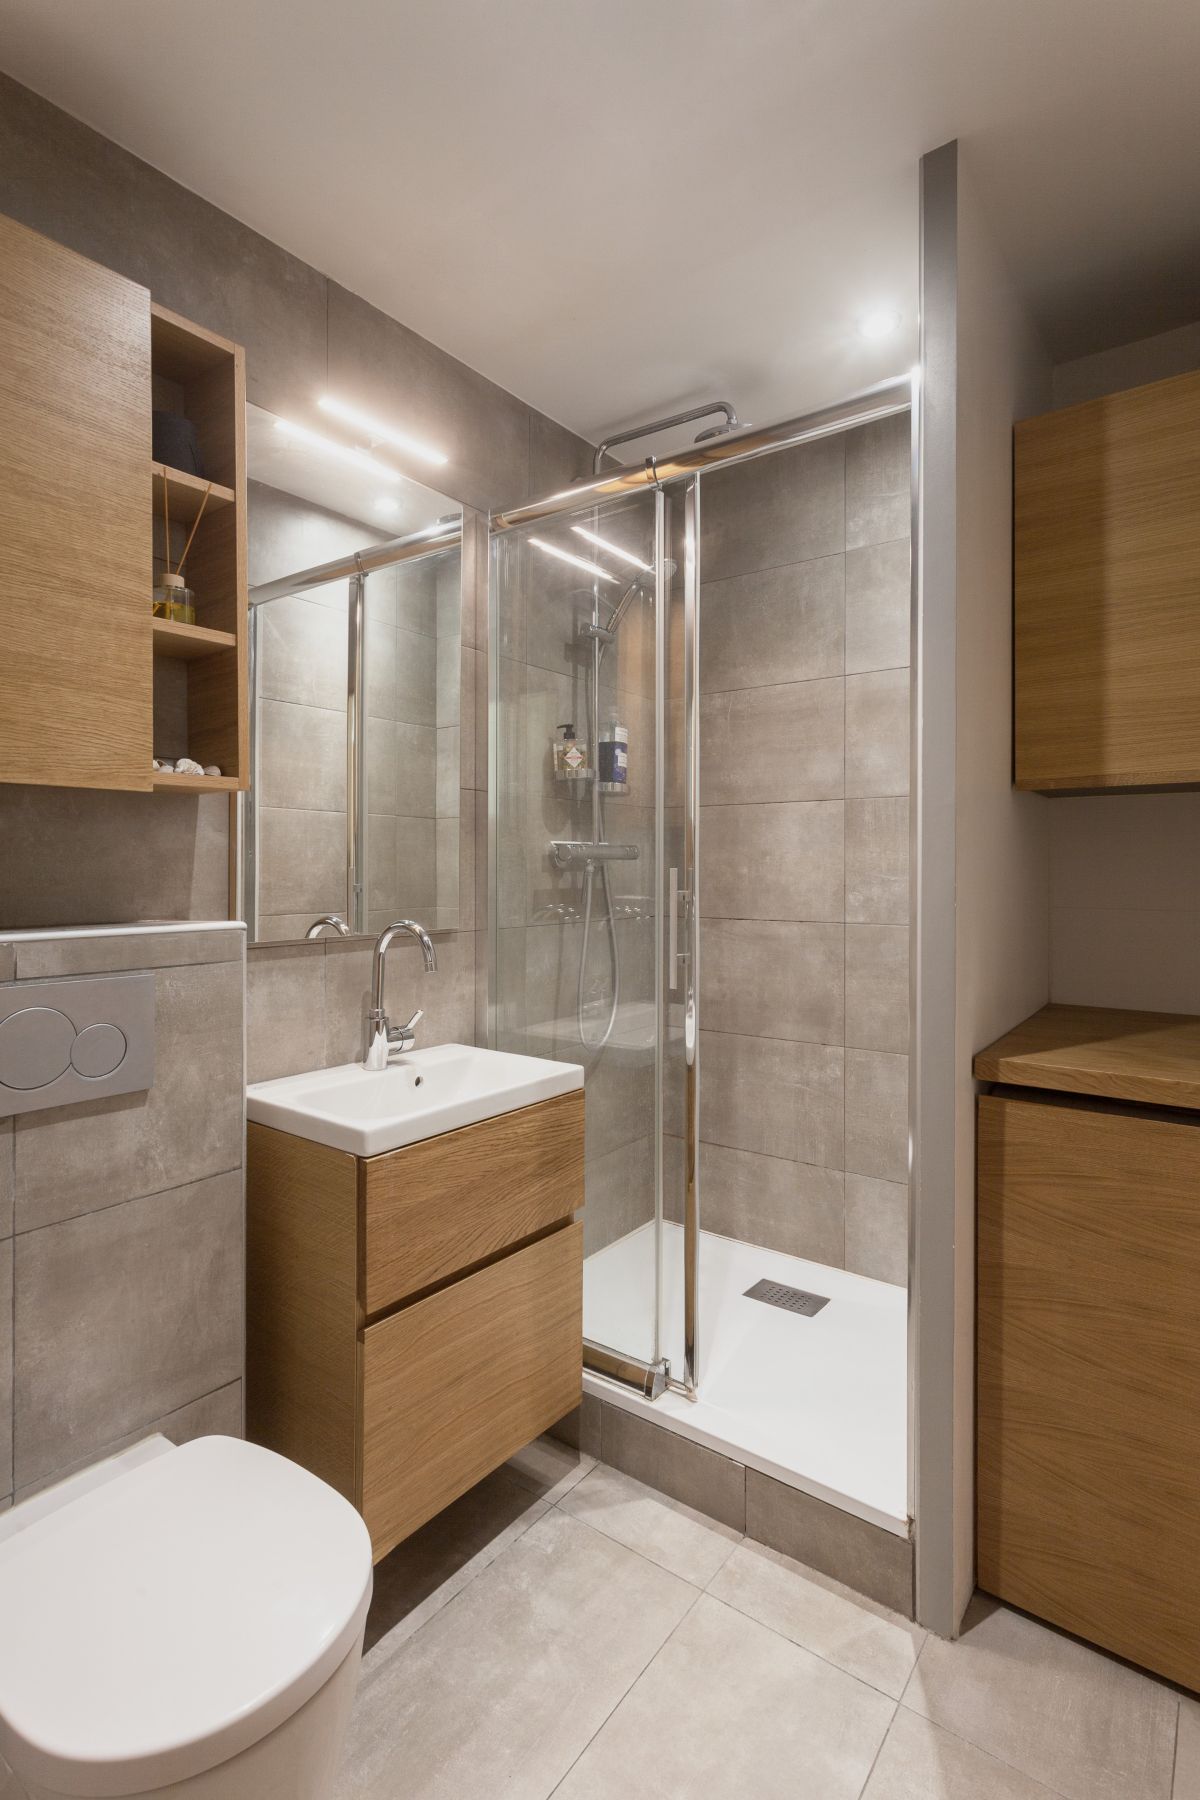 Phòng tắm với đầy đủ trang thiết bị hiện đại và vẫn sử dụng các gam màu chủ đạo như xám và nâu nhạt 